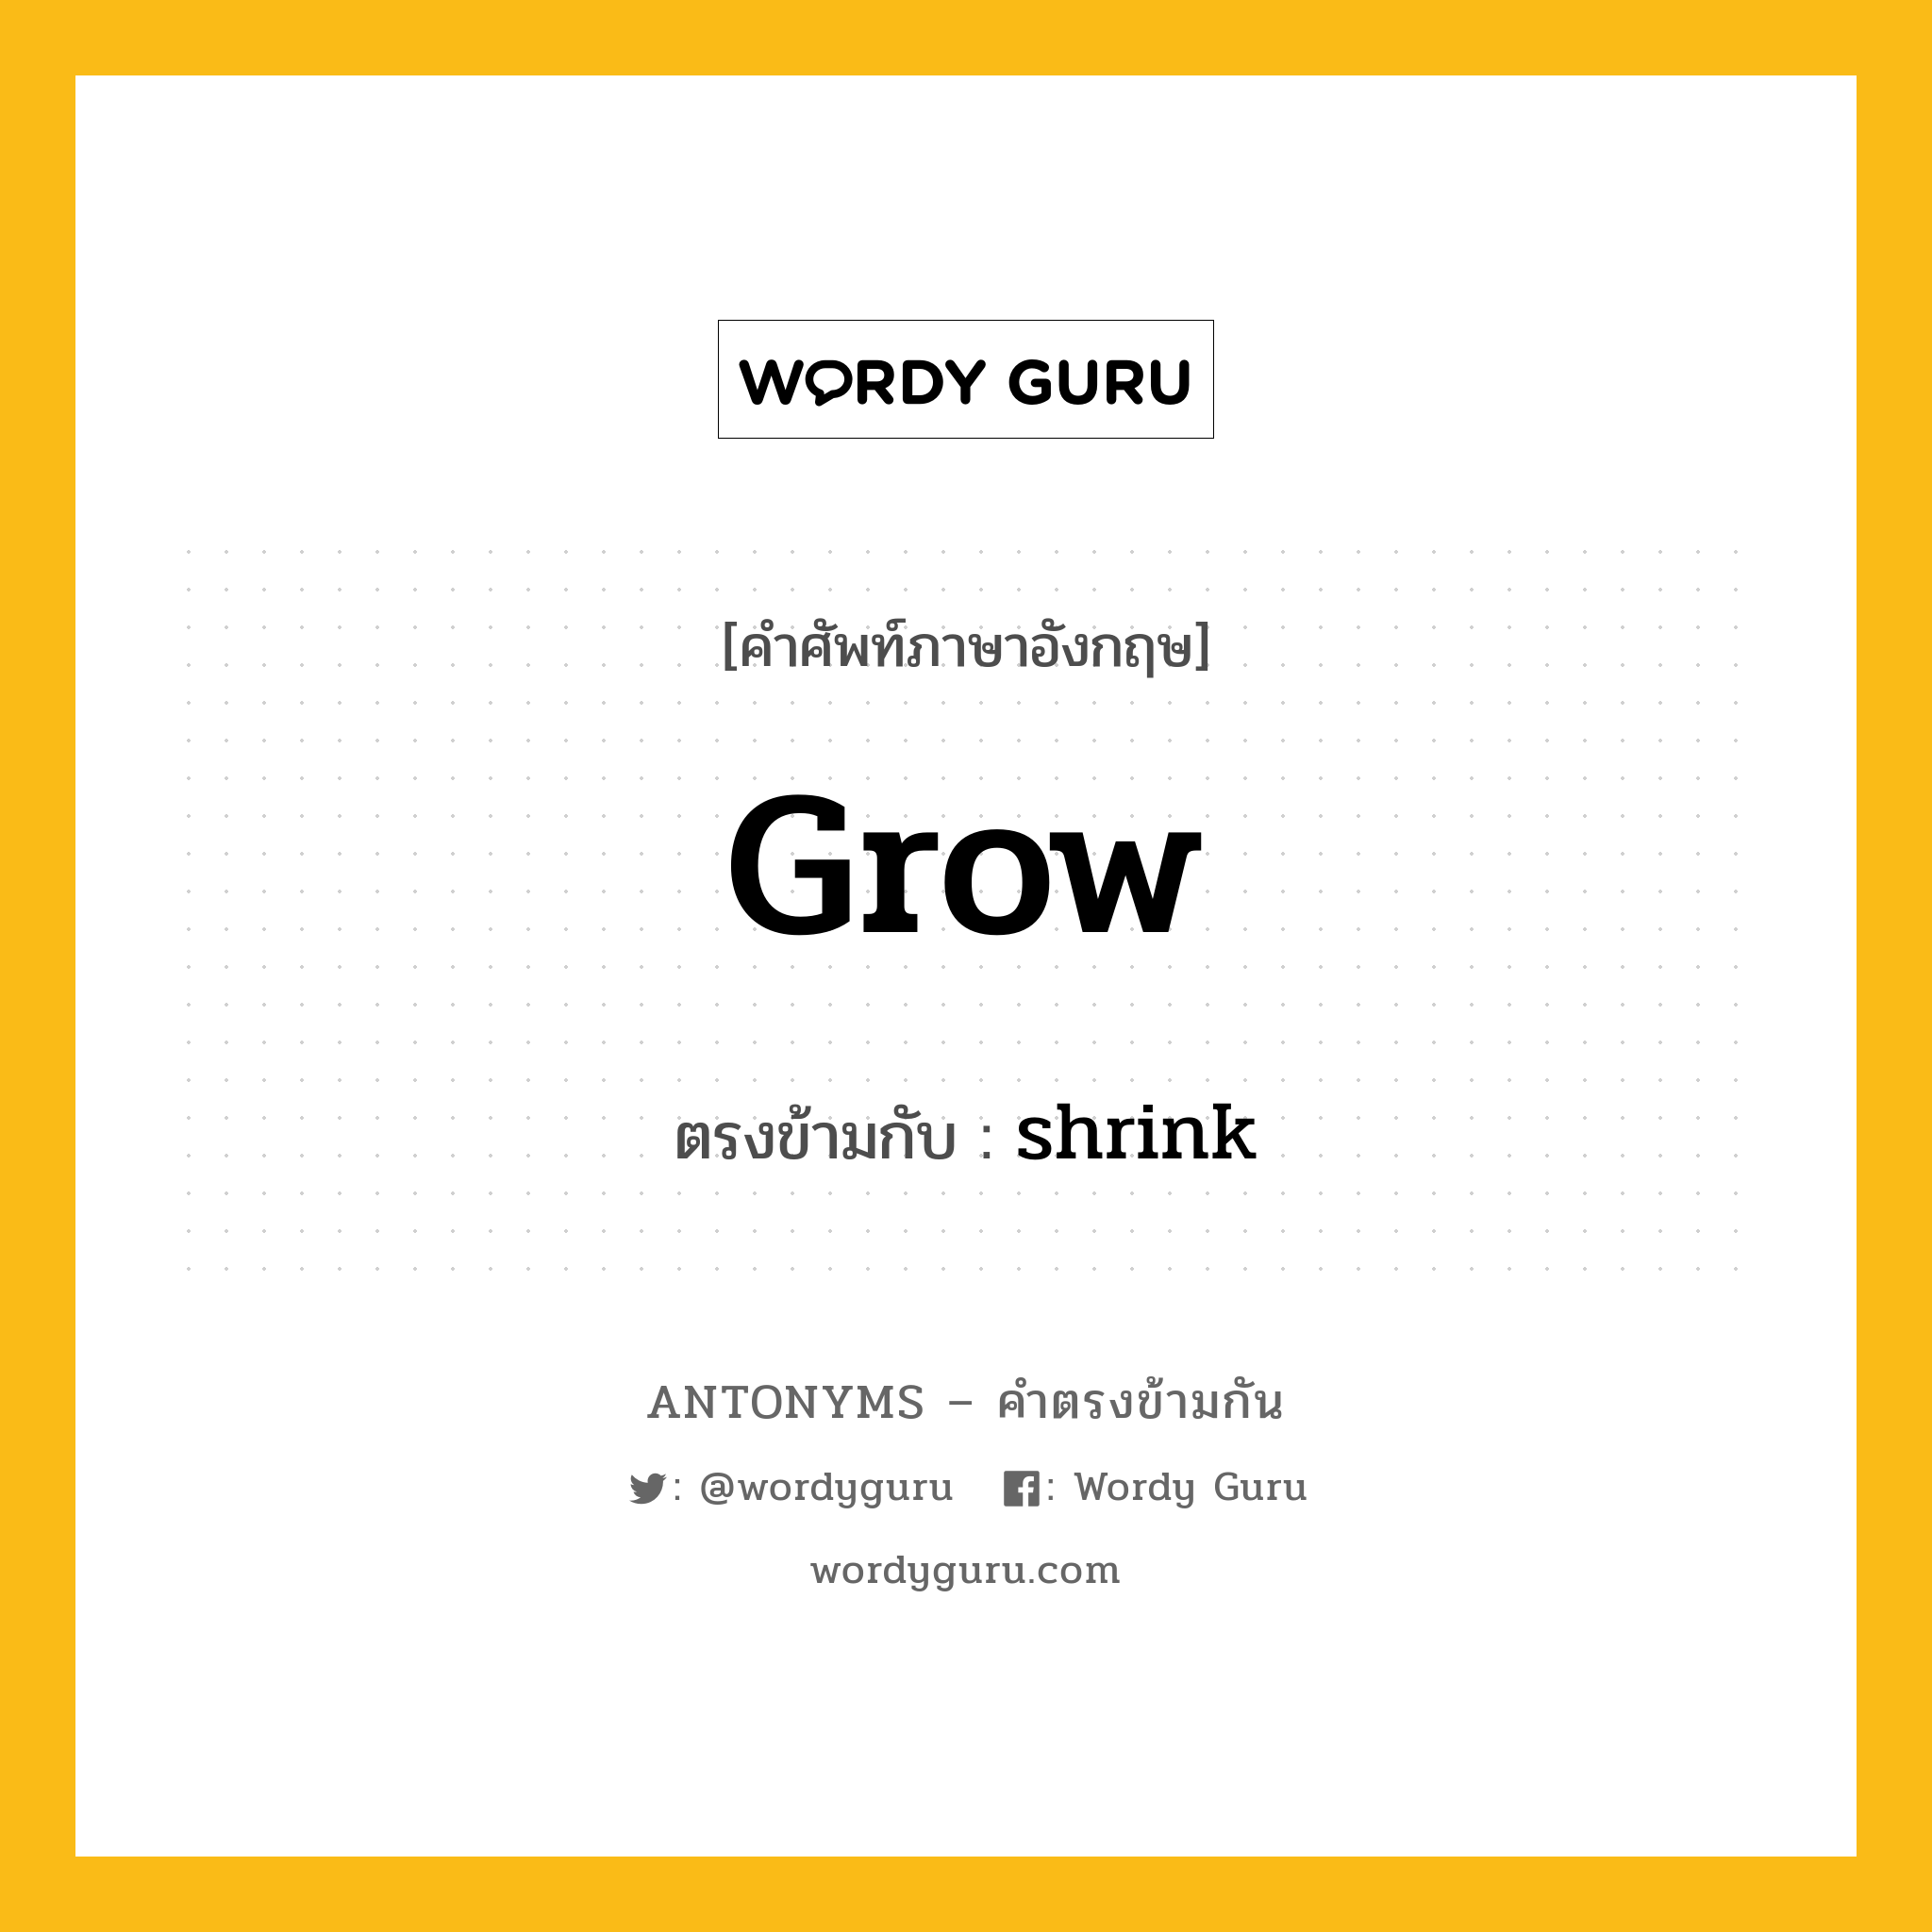 grow เป็นคำตรงข้ามกับคำไหนบ้าง?, คำศัพท์ภาษาอังกฤษ grow ตรงข้ามกับ shrink หมวด shrink